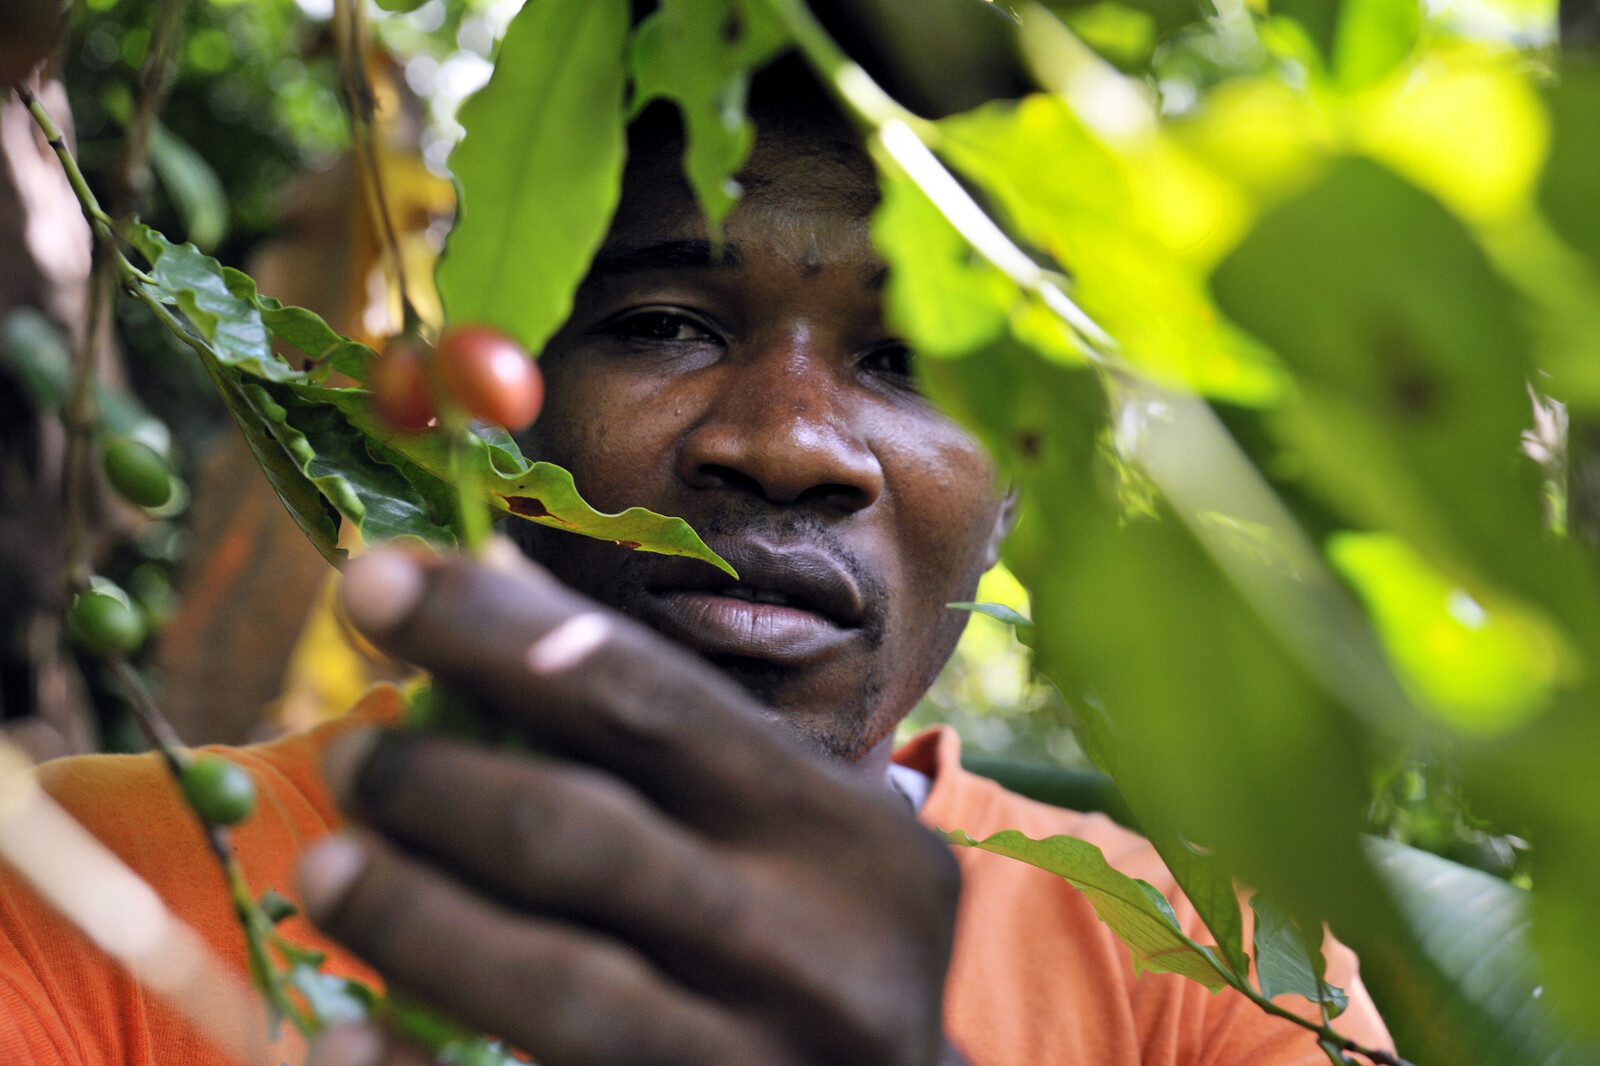 In Haiti halfen Kooperationen dabei, neue Gärten anzulegen. Ein Mann zeigt die Früchte seines Baumes.